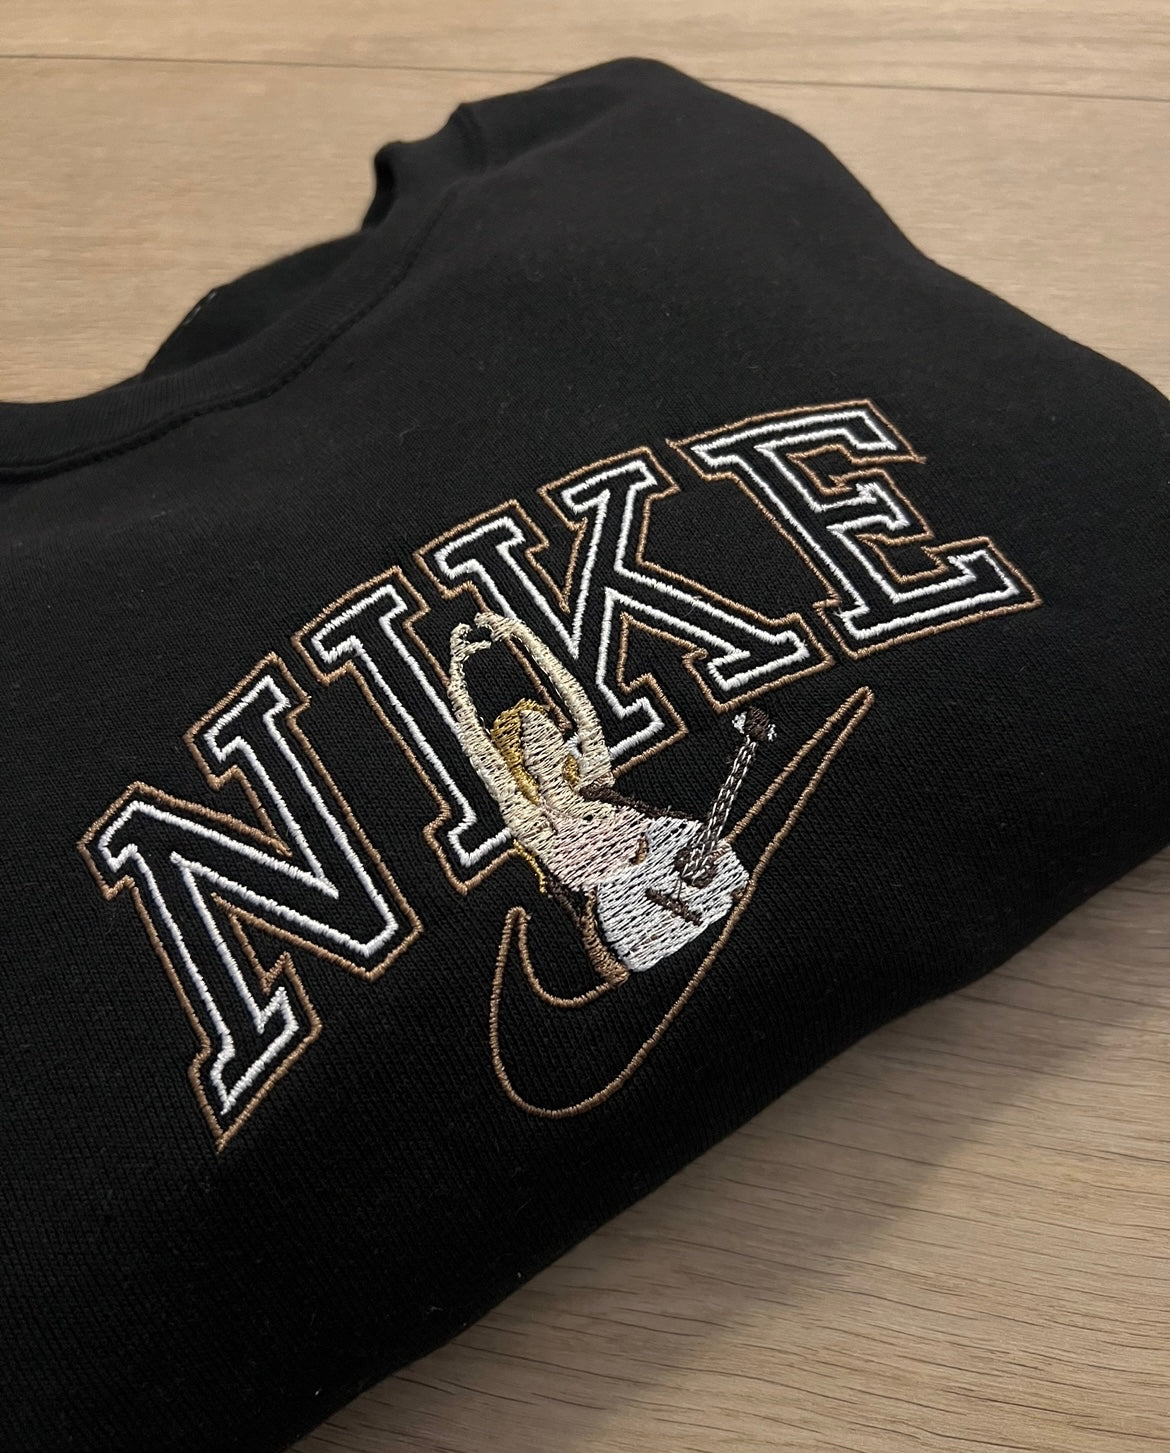 Custom ‘Swiftie’ vintage style sweatshirt